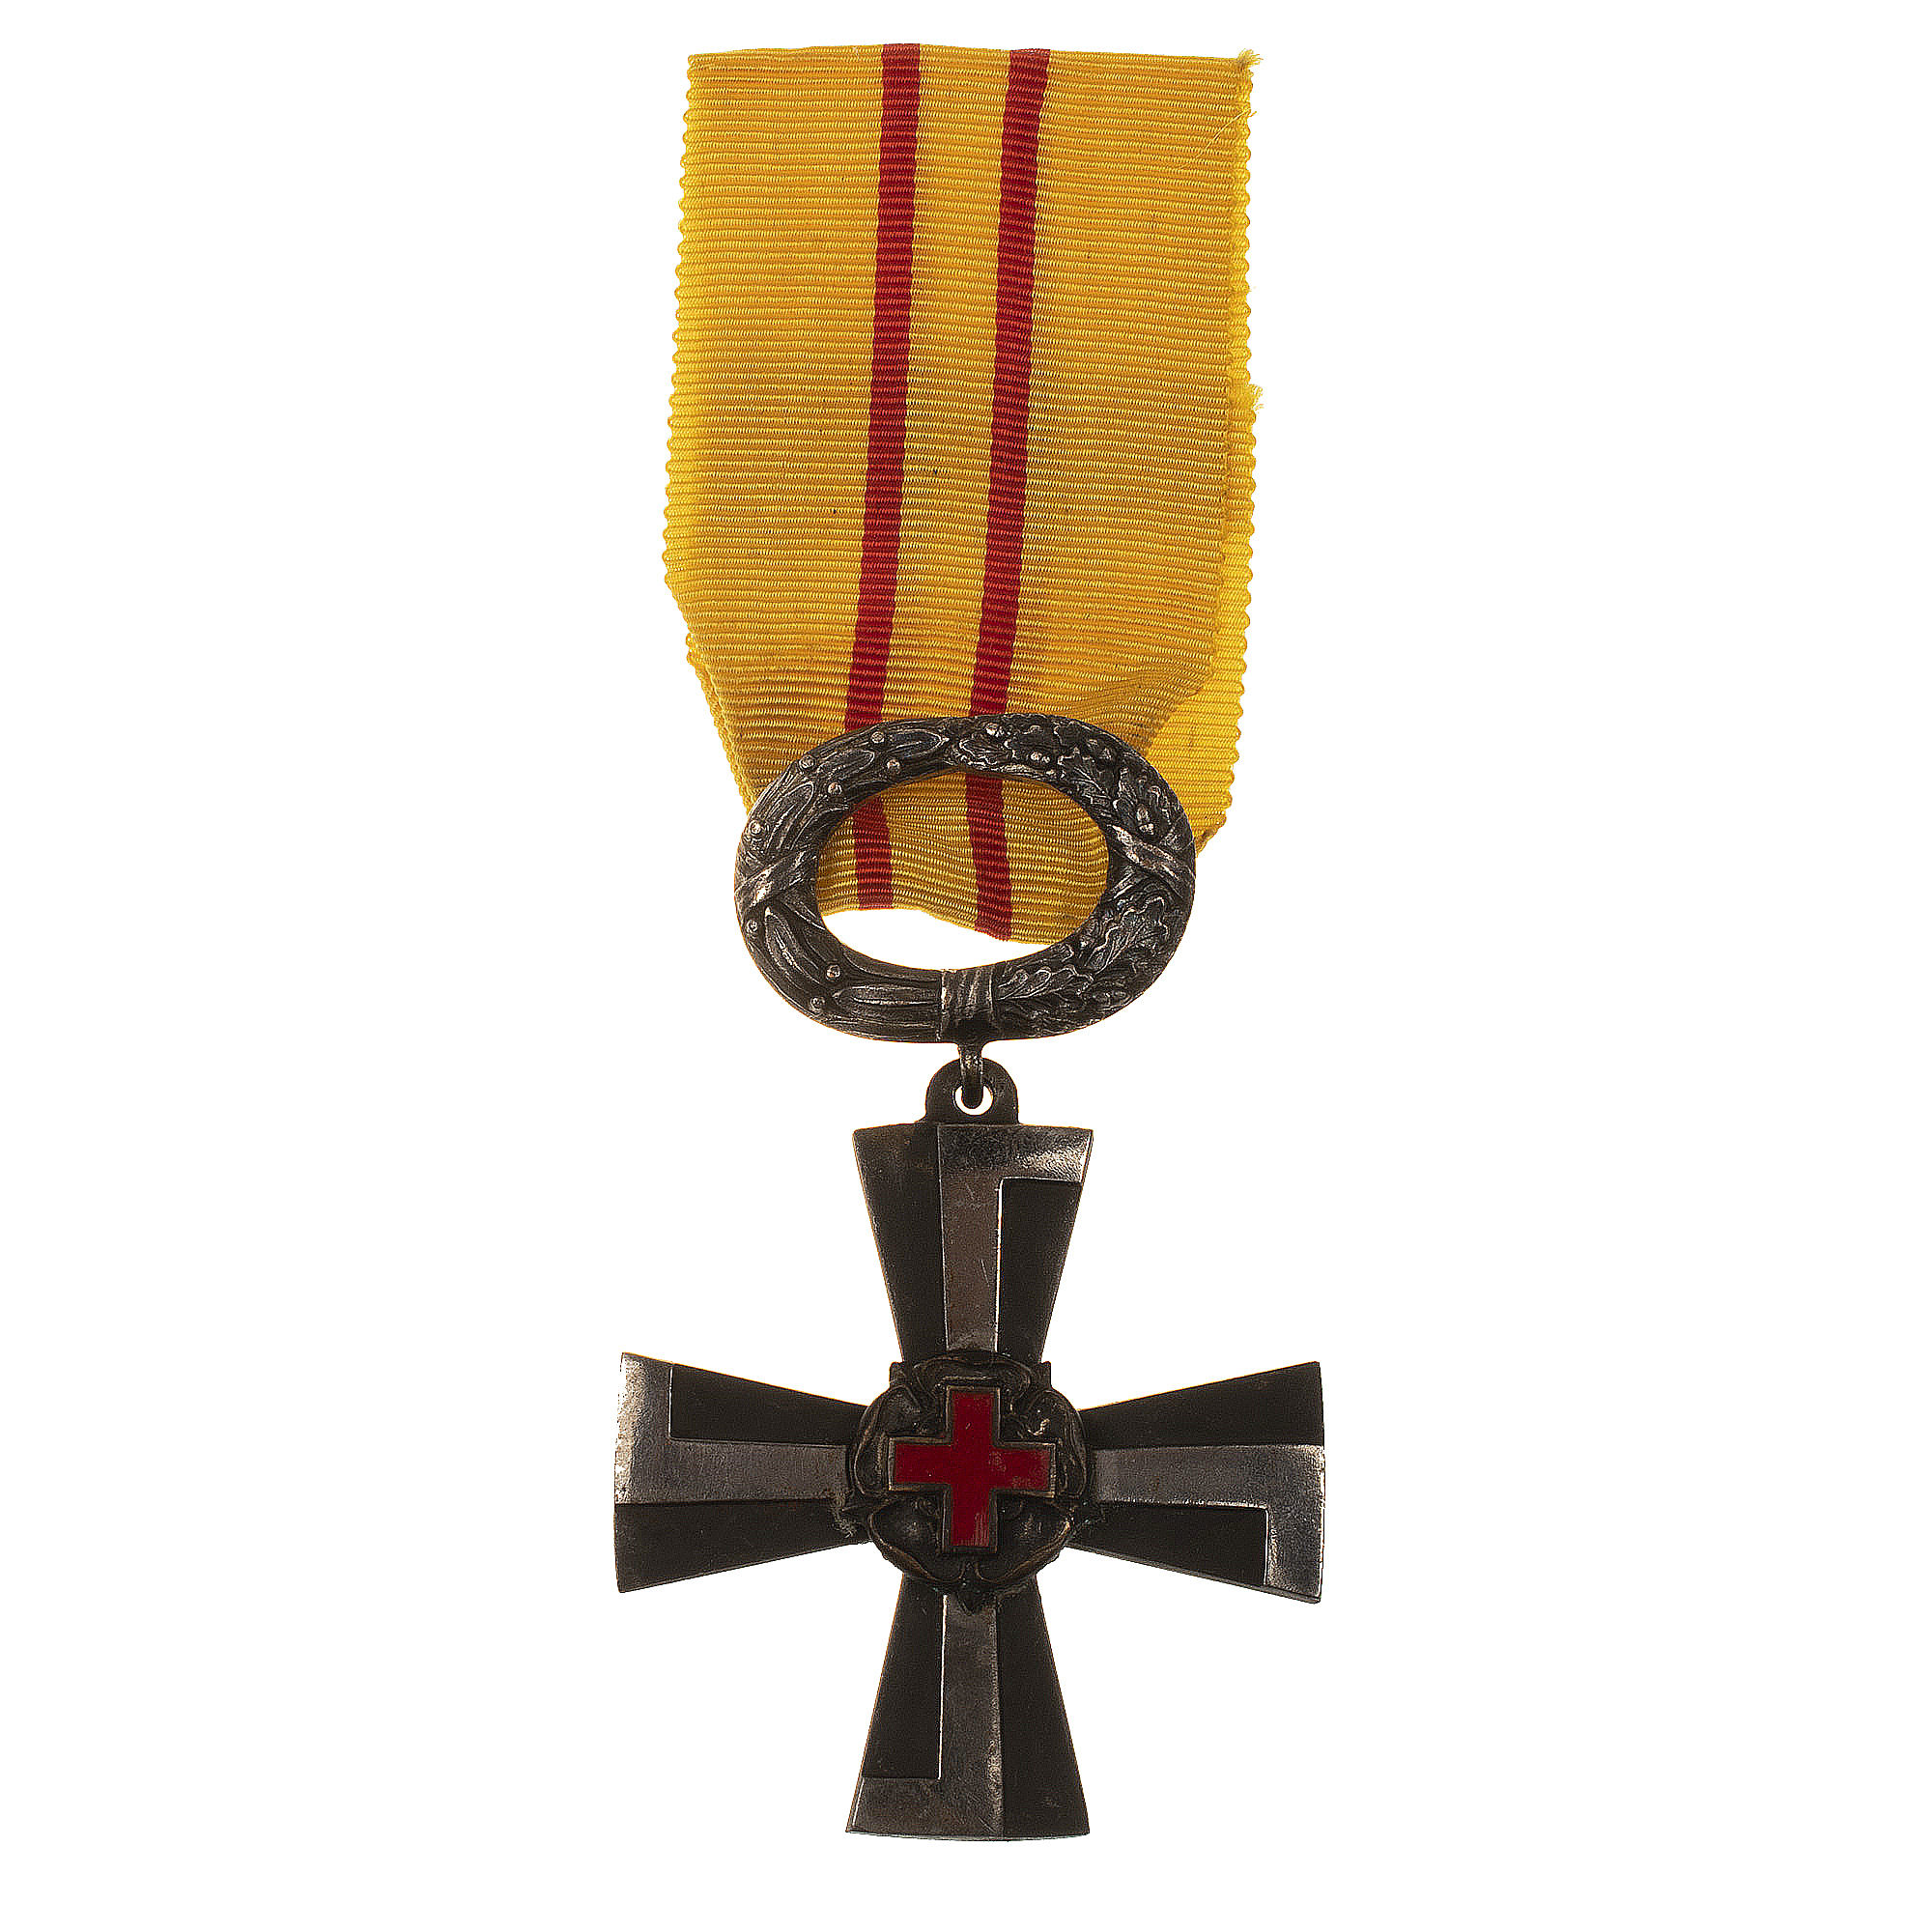 Финляндия. Орден "Крест Свободы" 4 класса. Для медицинского персонала в военное время.